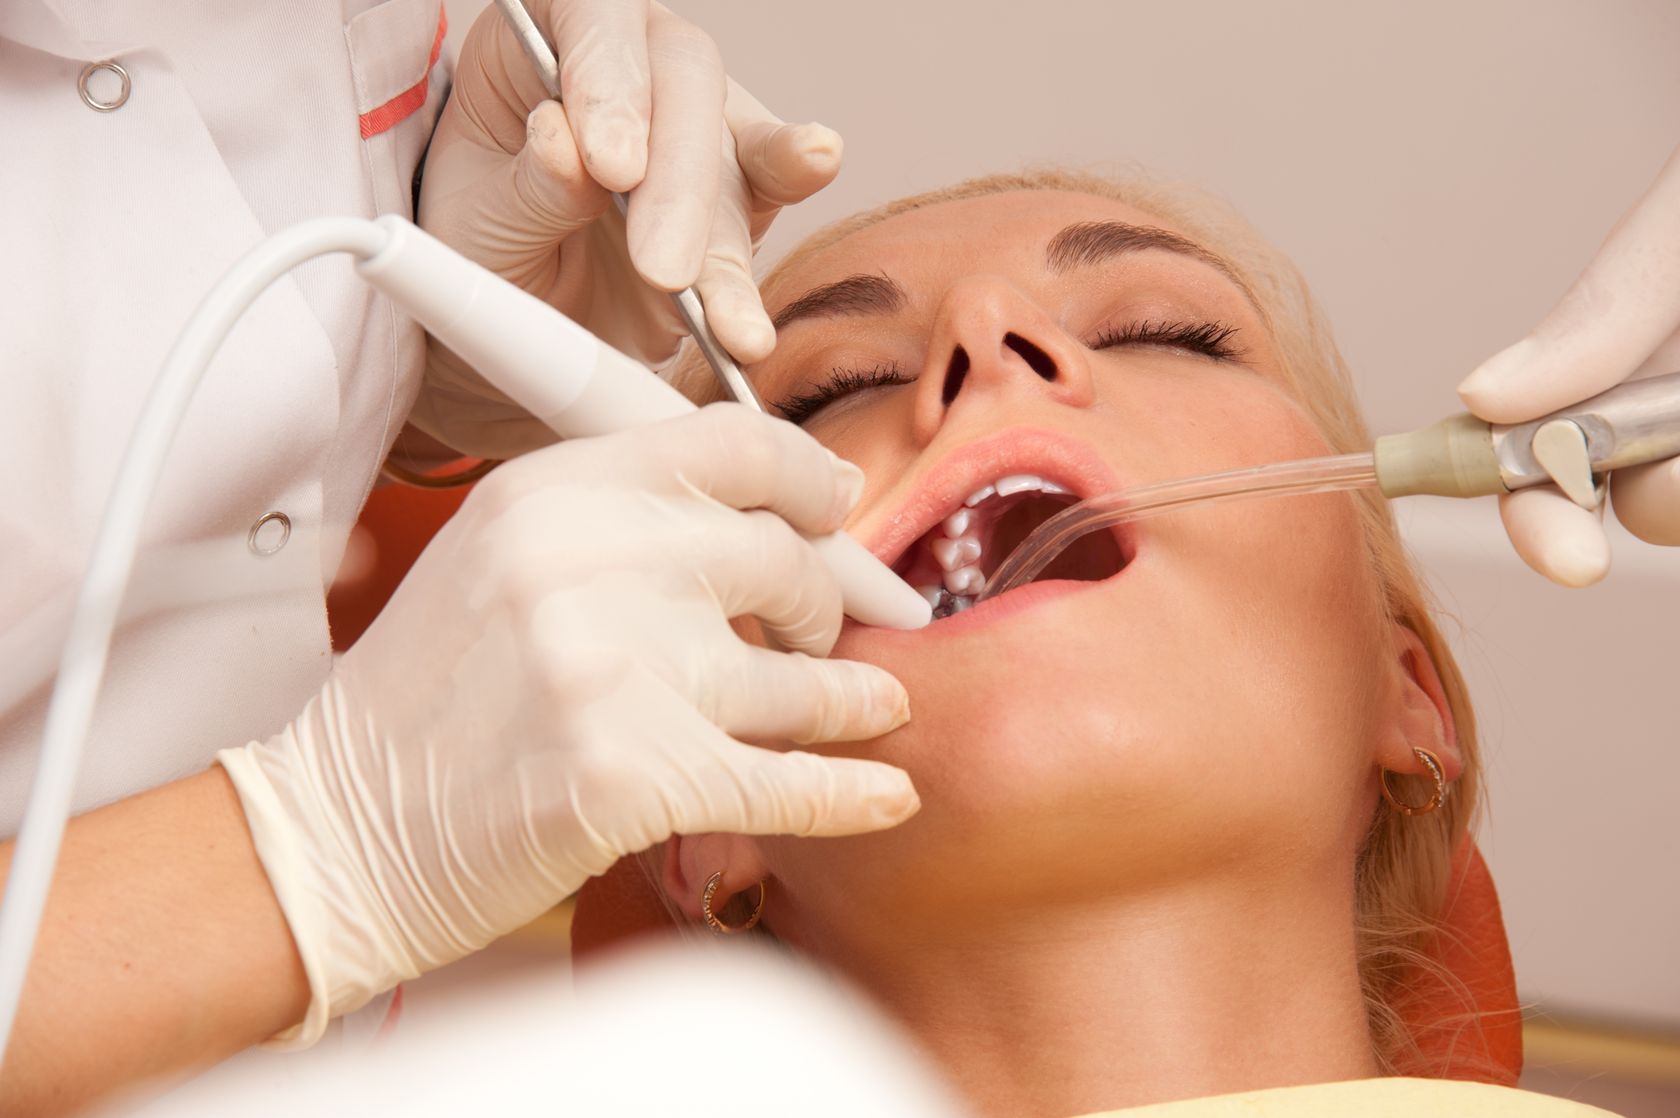 Entenda a importância da extração dos sisos para a saúde bucal